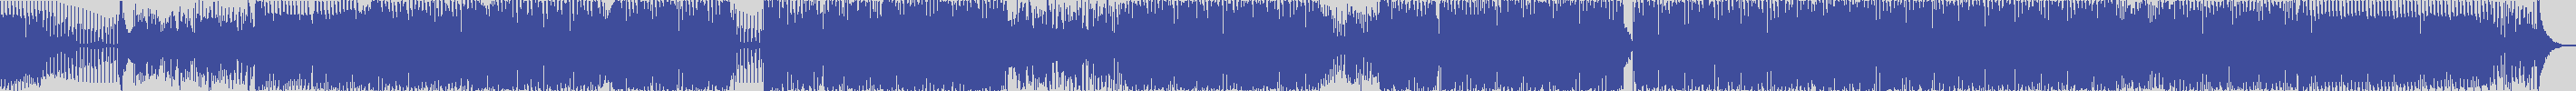 definitiva [DEF005] Inkanto - Il Disco Del Sovrano [Dj Bum Bum Rmx Extended] audio wave form